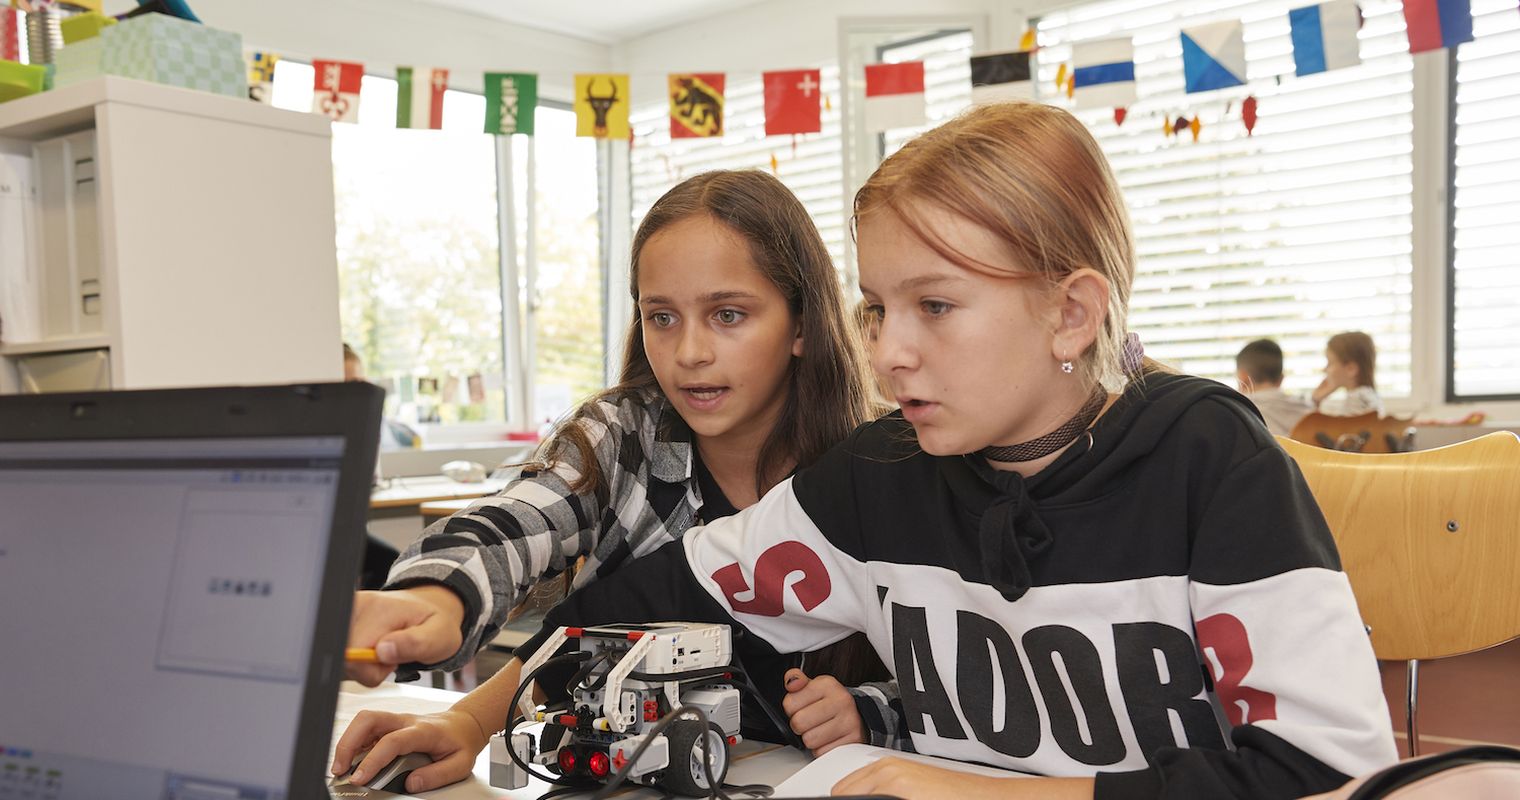 Von wegen nur für Nerds und Jungs: Roboter halten Einzug in Luzerner Schulzimmer